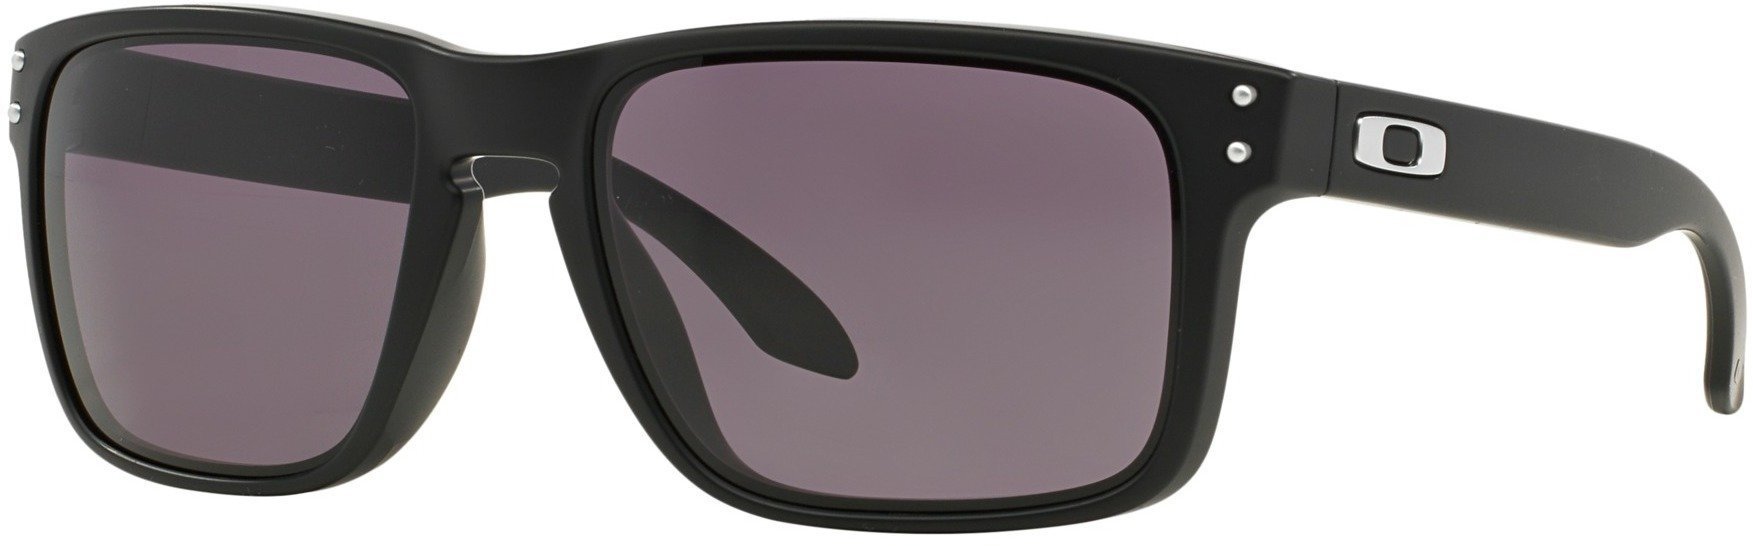 Γυαλιά Ηλίου Lifestyle Oakley Holbrook Matte Black w/Warm Grey